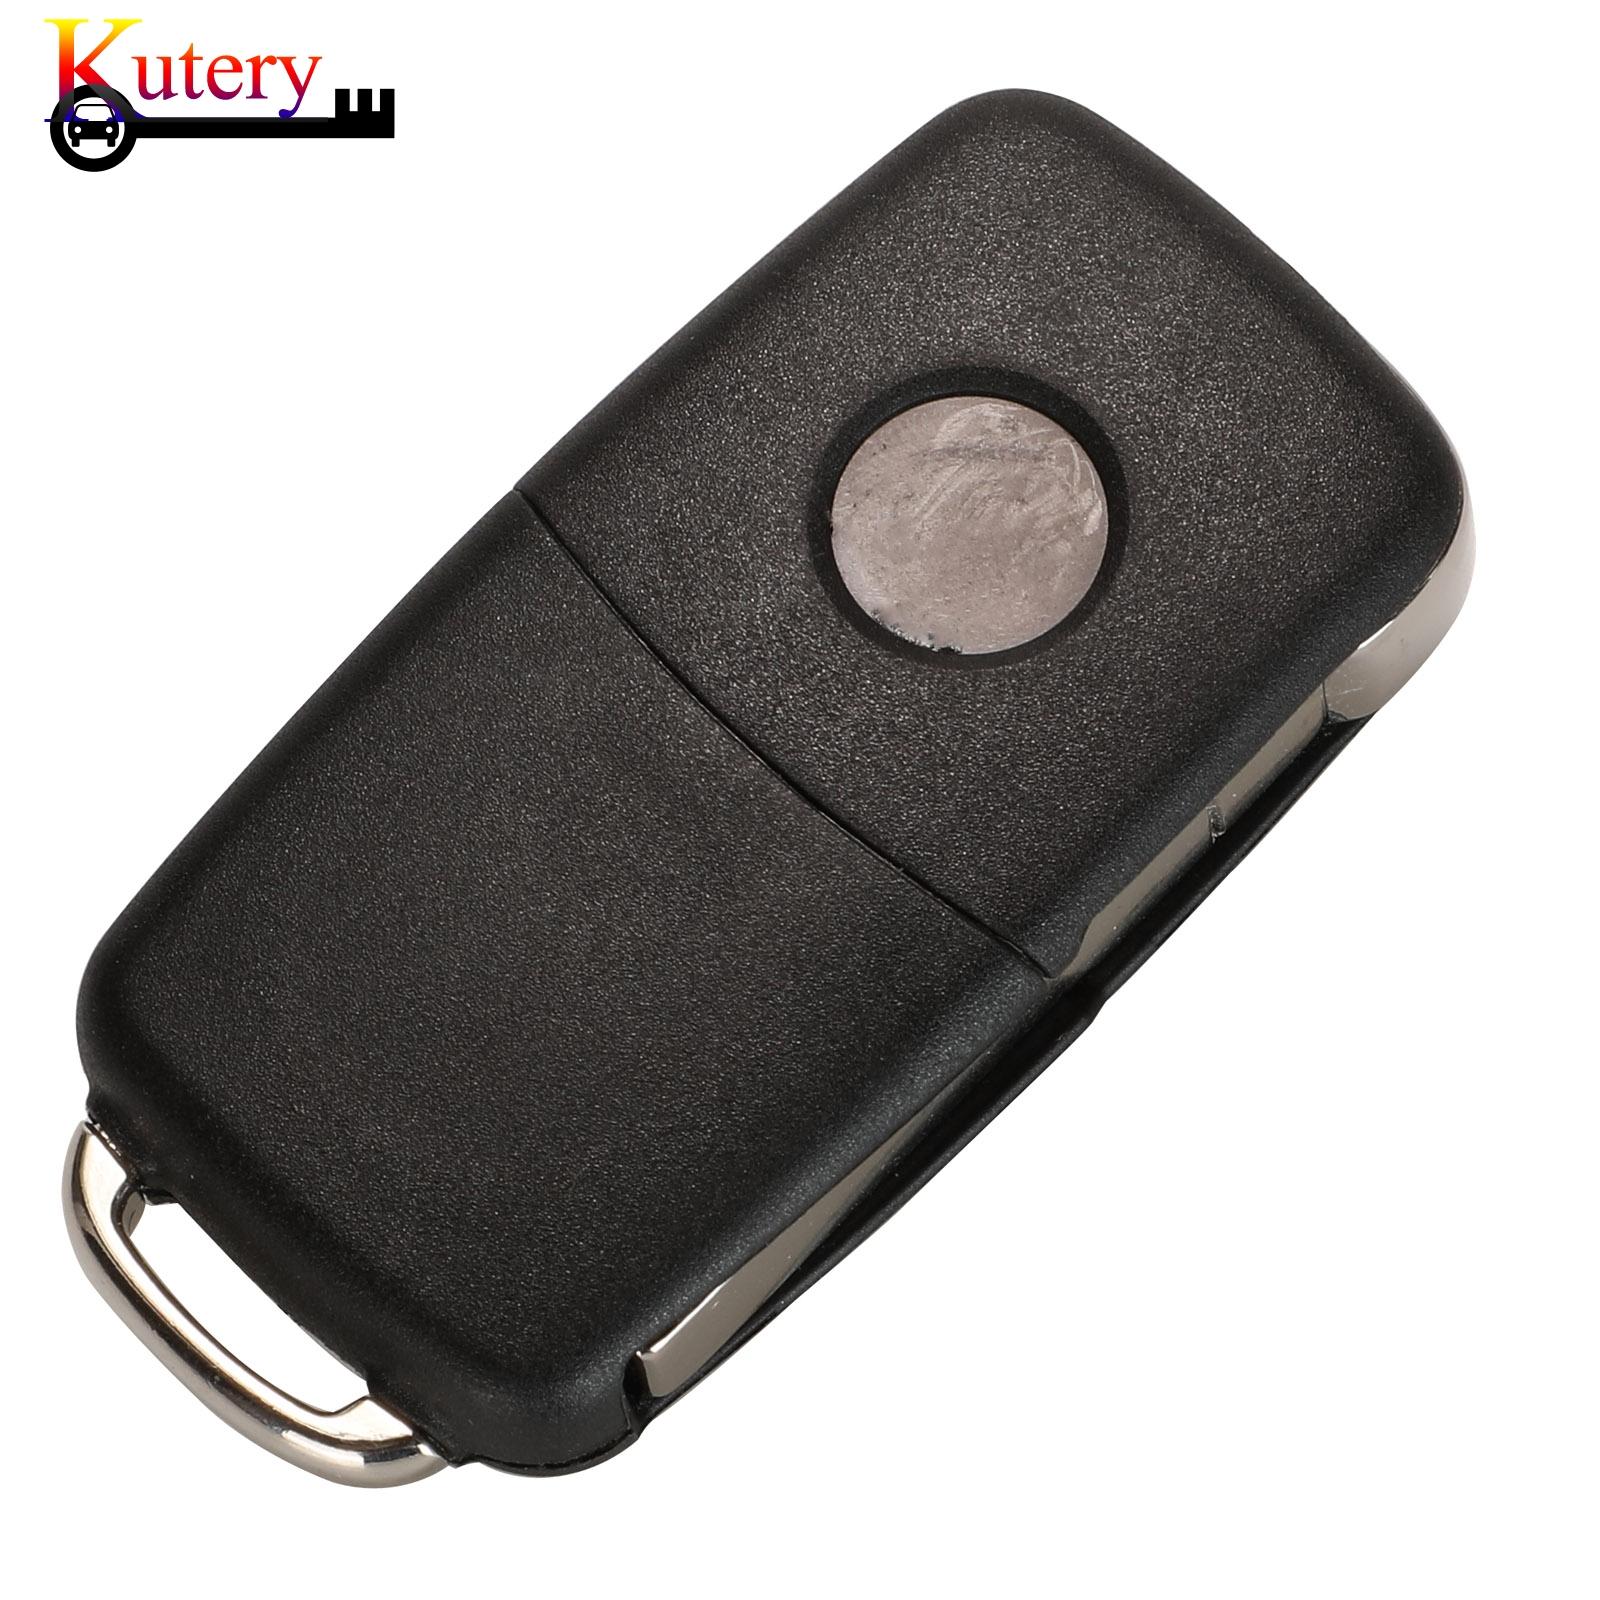 Изображение товара: Kutery дистанционный умный Автомобильный ключ для VOLKSWAGEN VW Amarok Transporter 2011-2016 2 кнопки 434 МГц ID48 чип 5K0837202AD